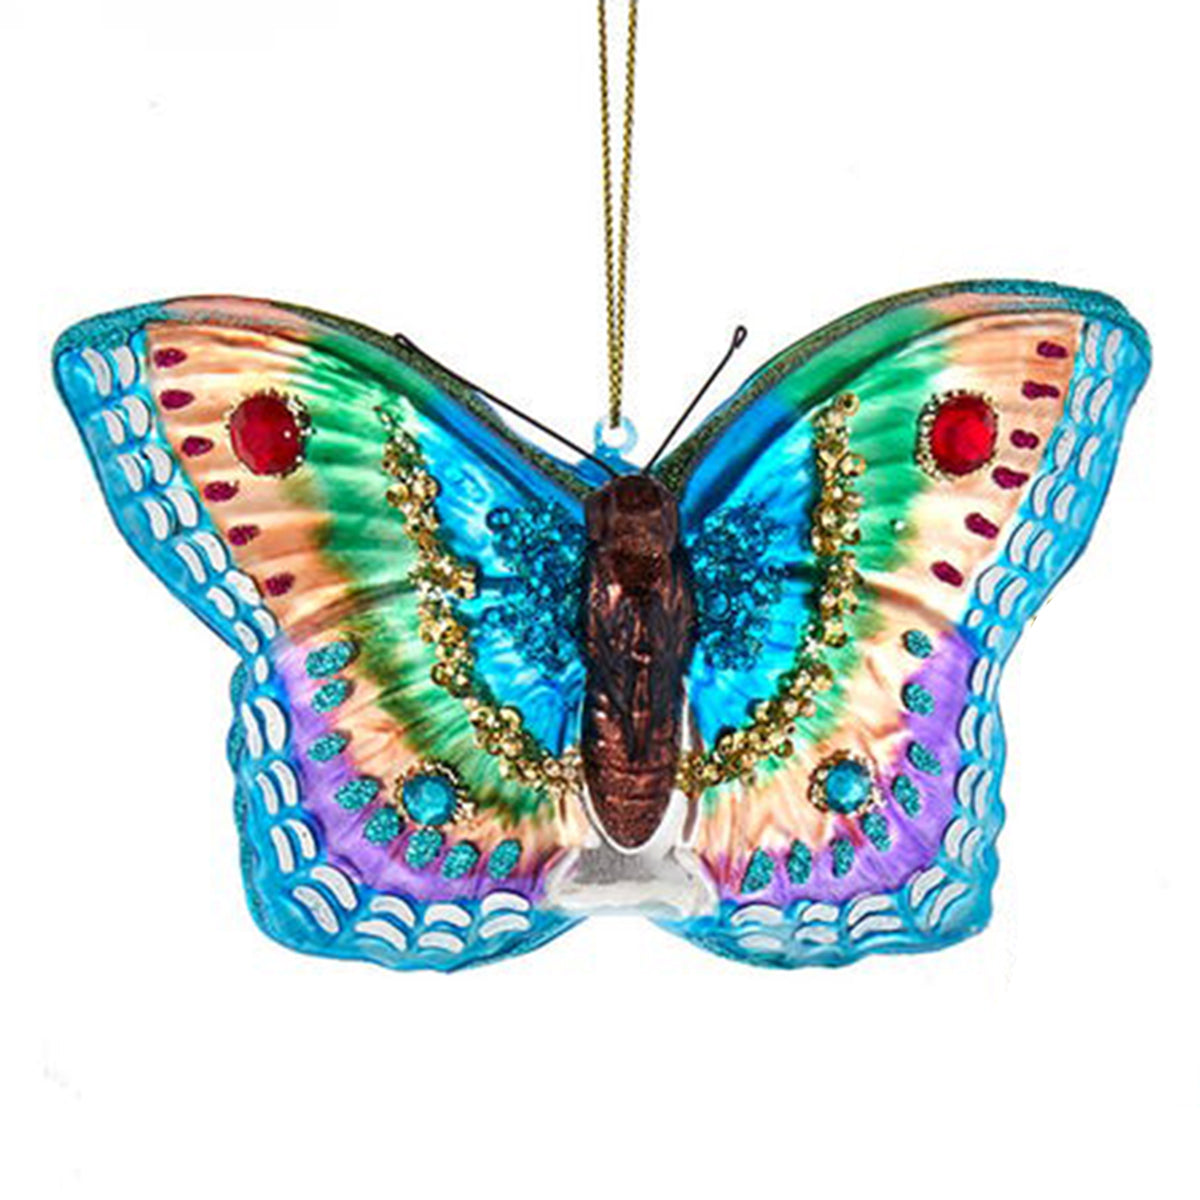 Kurt Adler 3.25" Glass Butterfly Ornament